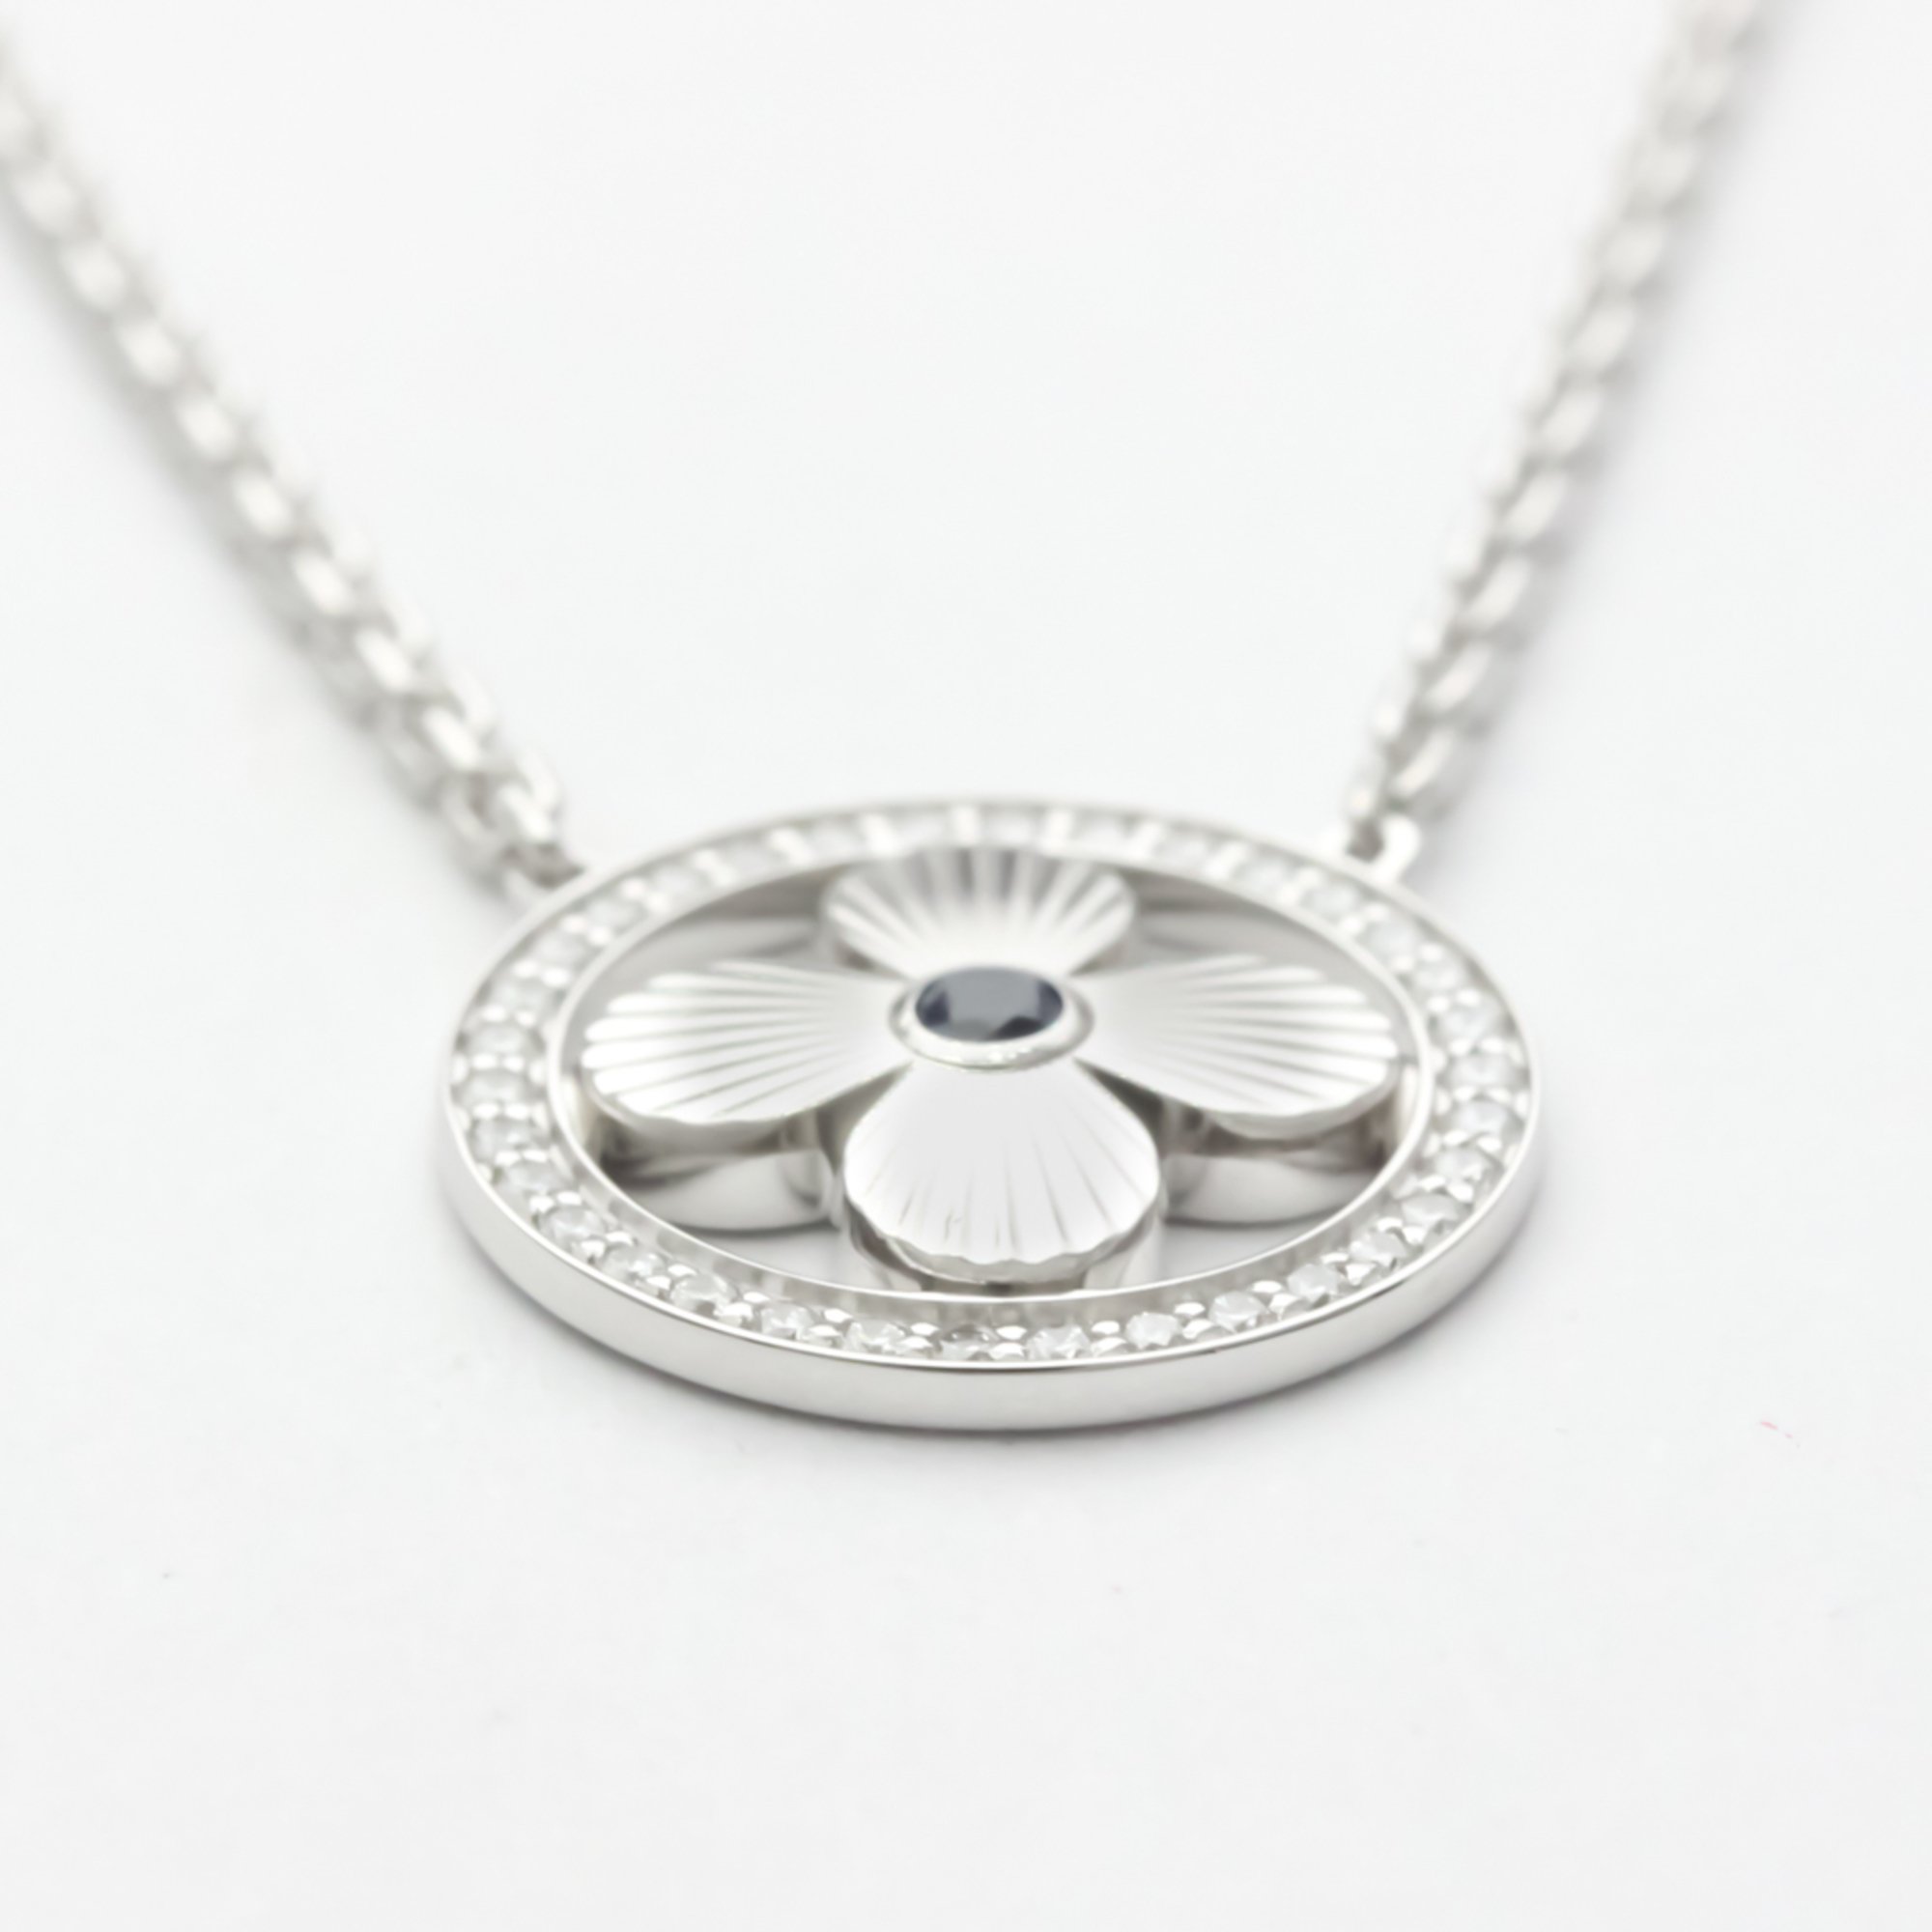 Louis Vuitton Pendant Sun Blossom Necklace White Gold (18K) Sapphire Men,Women Fashion Pendant Necklace (Silver)